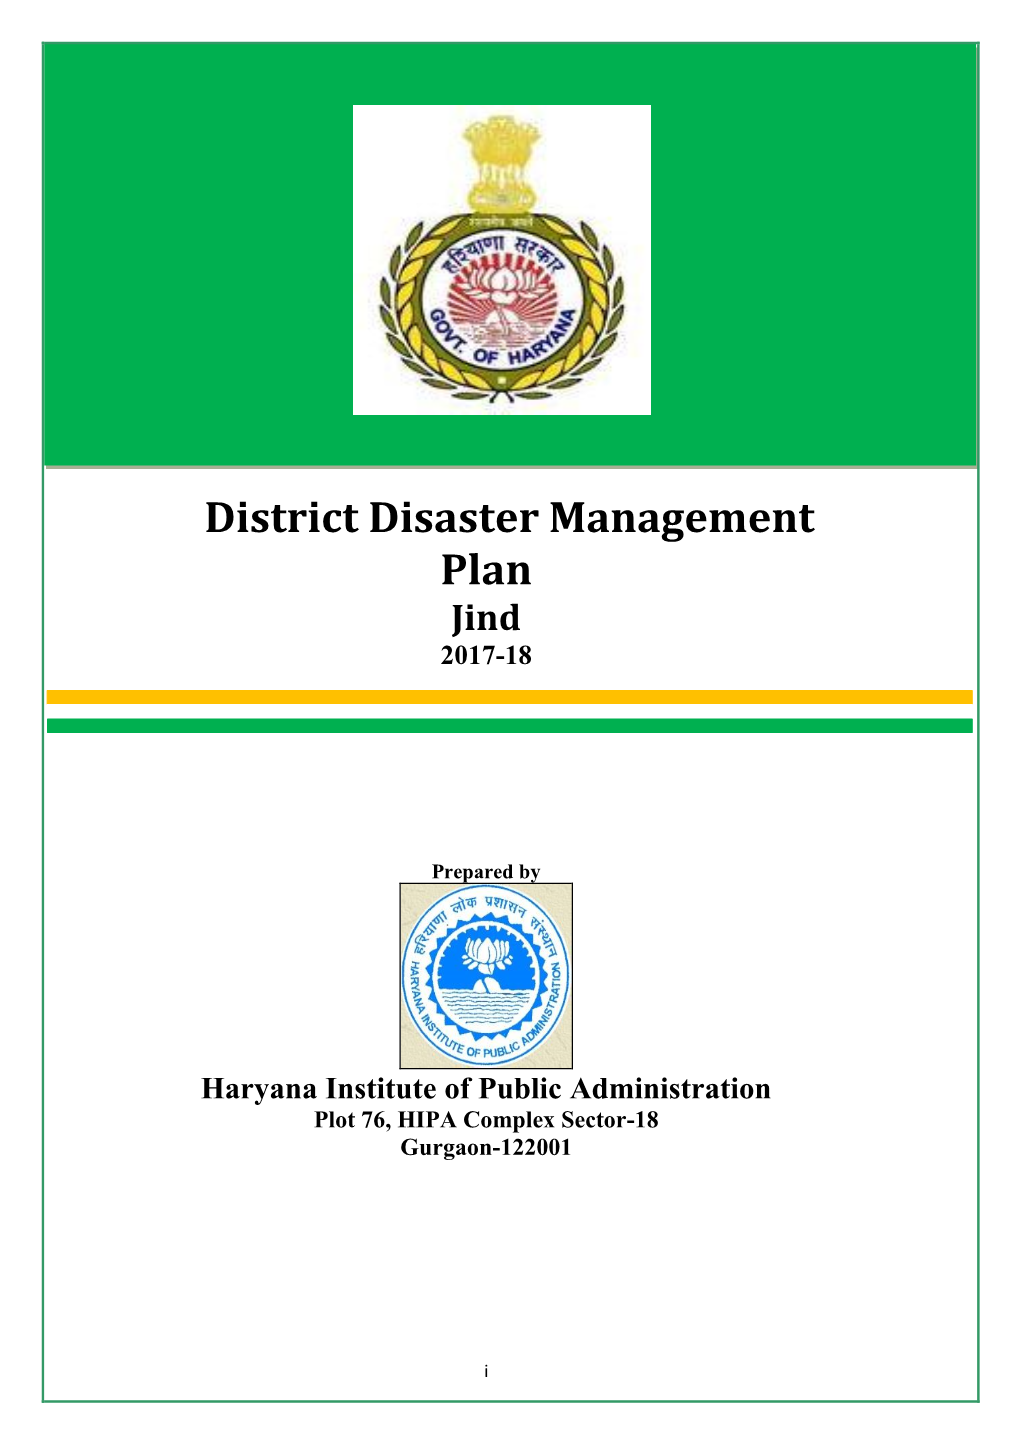 District Disaster Management Plan Jind 2017-18